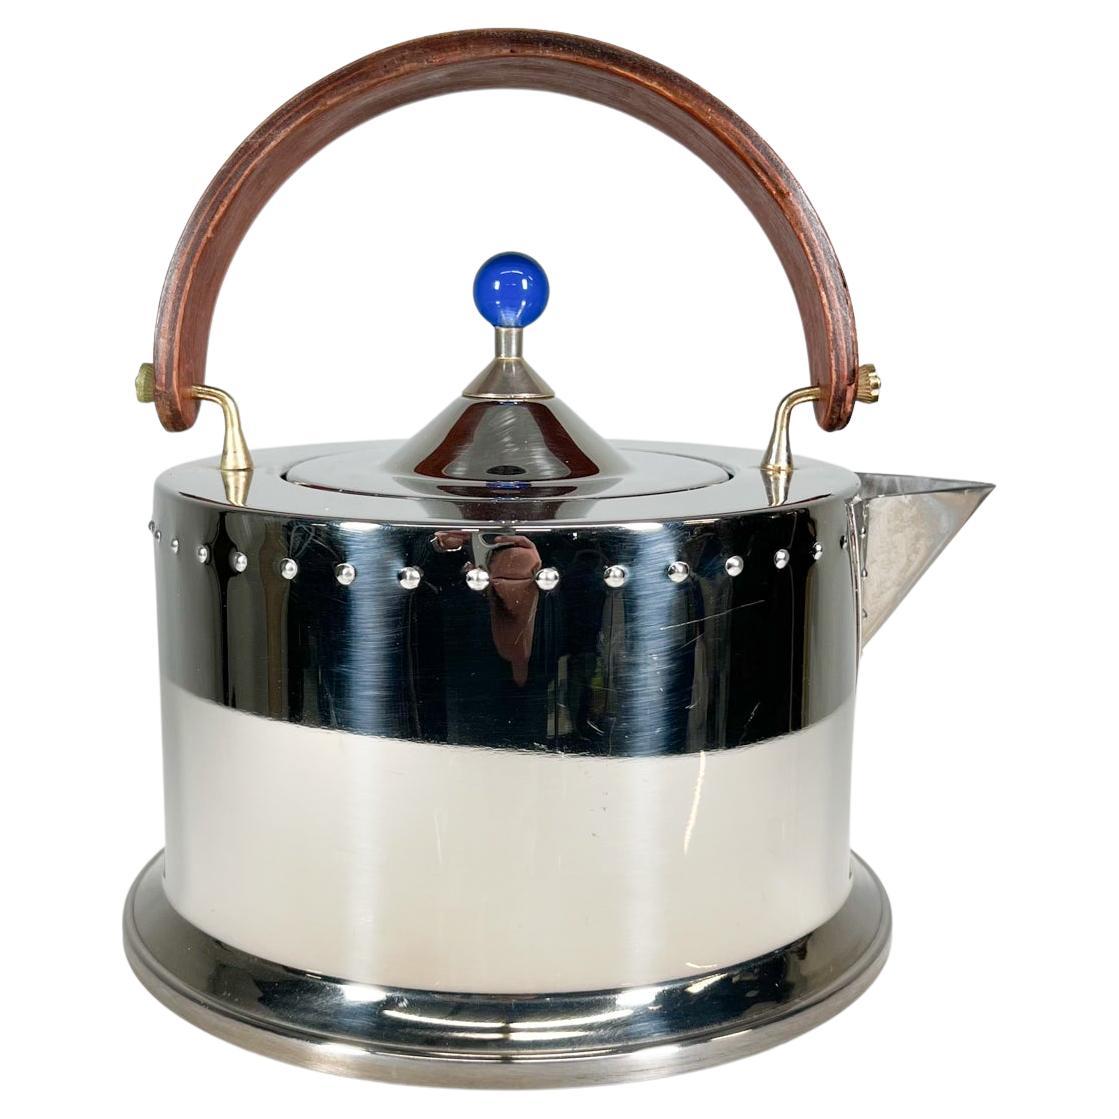 https://a.1stdibscdn.com/1980s-ottoni-stainless-tea-kettle-by-carsten-jorgensen-for-bodum-italy-for-sale/f_9715/f_324763021674957441045/f_32476302_1674957441328_bg_processed.jpg